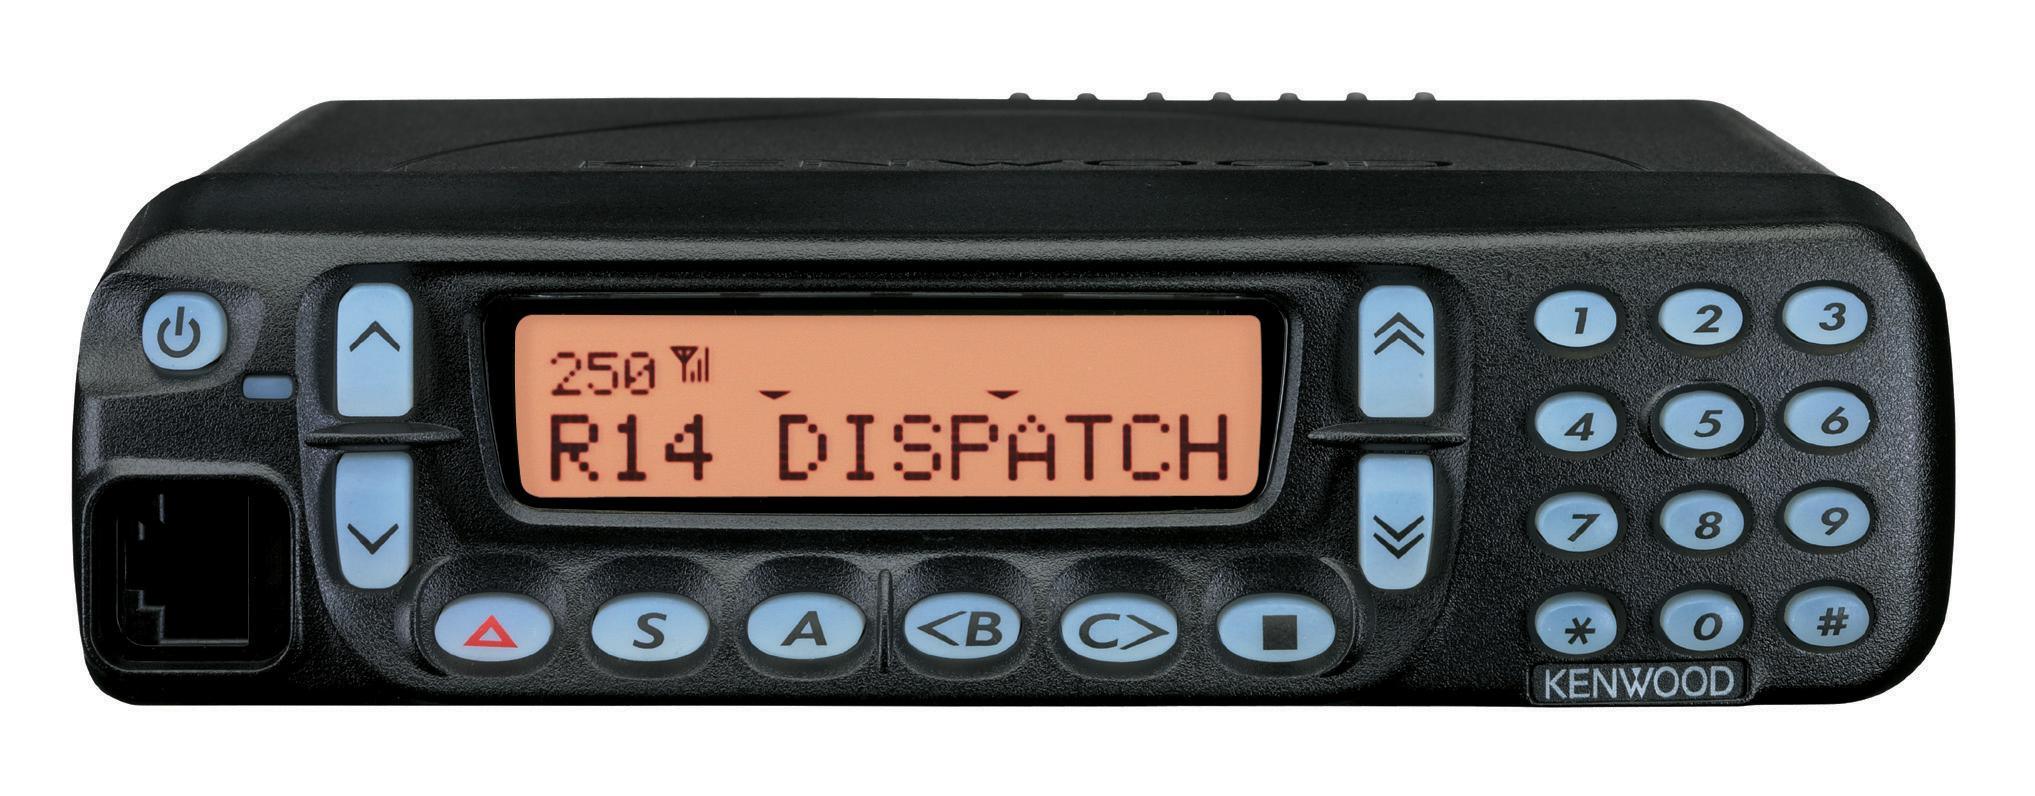 Kenwood TK-8189E MPT UHF FM Mobile Radio with Front-panel Keypad